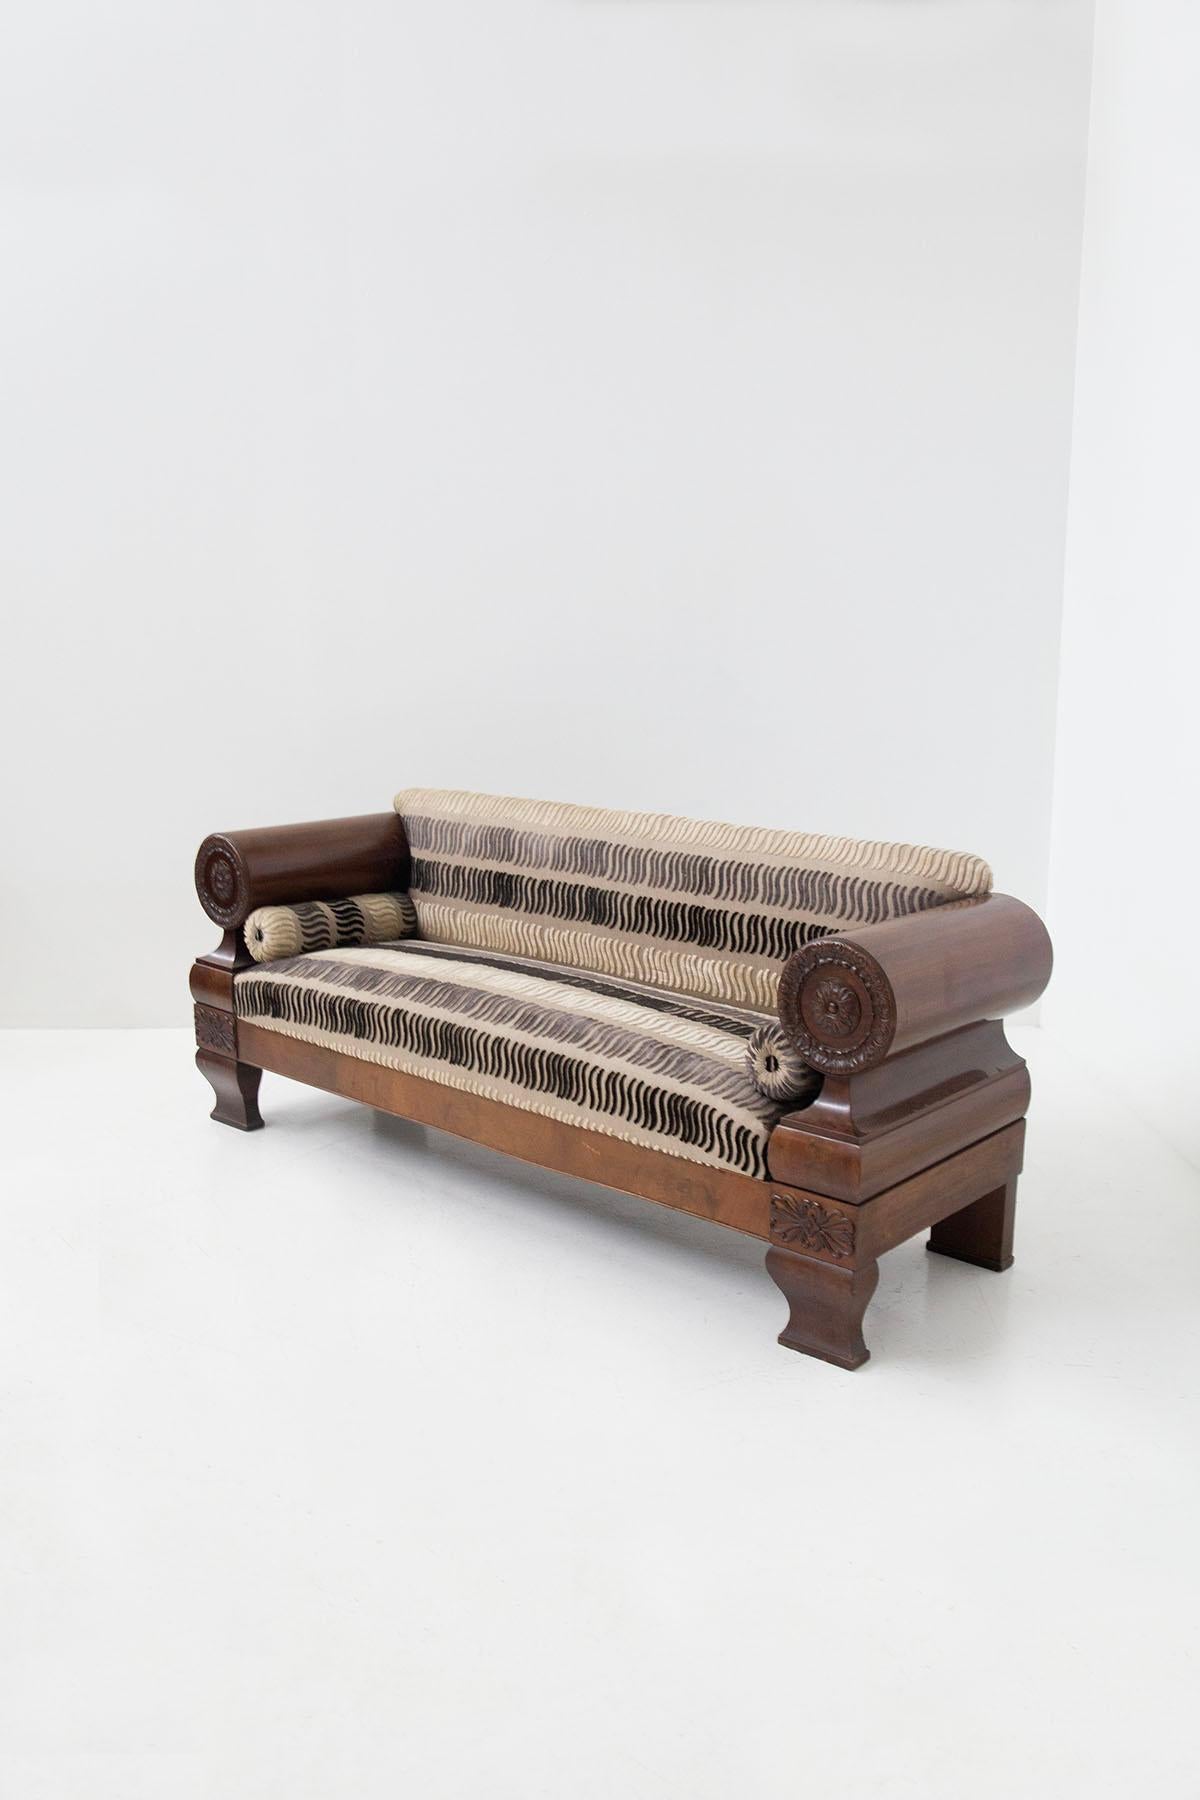 Beeindruckendes Biedermeier-Sofa nordeuropäischer Herkunft aus den frühen 1900er Jahren. Das majestätische Sofa verfügt über einen kolossalen Holzrahmen mit mehreren Besonderheiten. An den Seiten befinden sich zwei große hölzerne Armlehnen mit einer